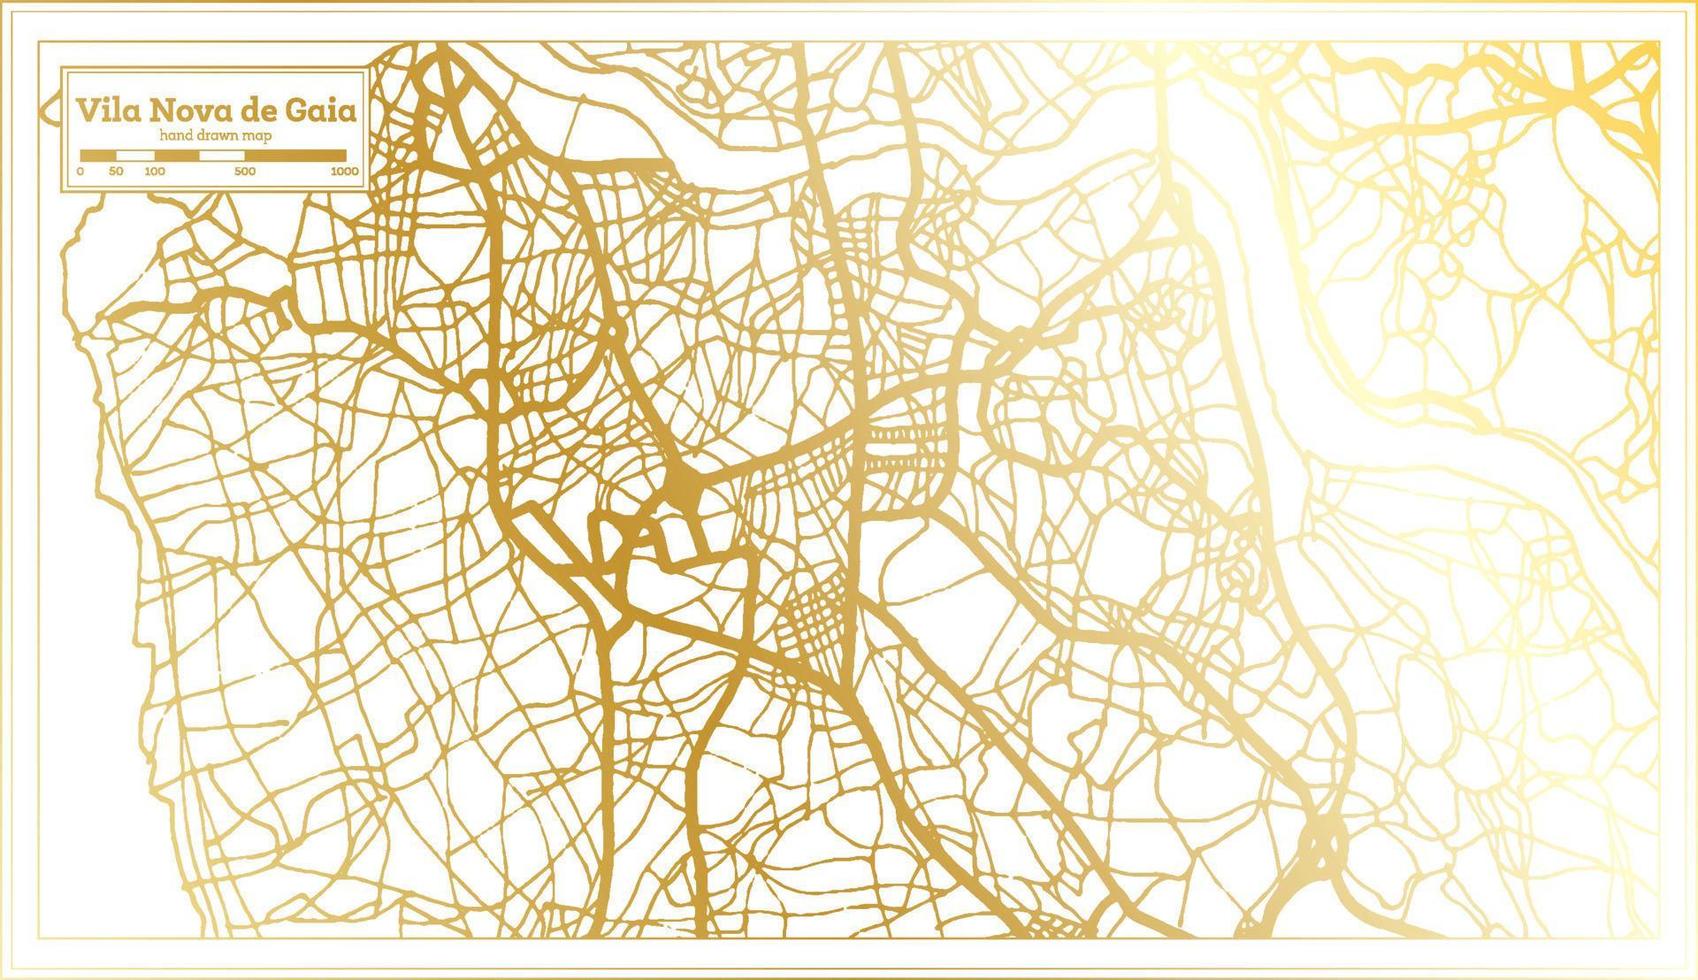 vila nova de gaia portugal plan de la ville dans un style rétro de couleur dorée. carte muette. vecteur